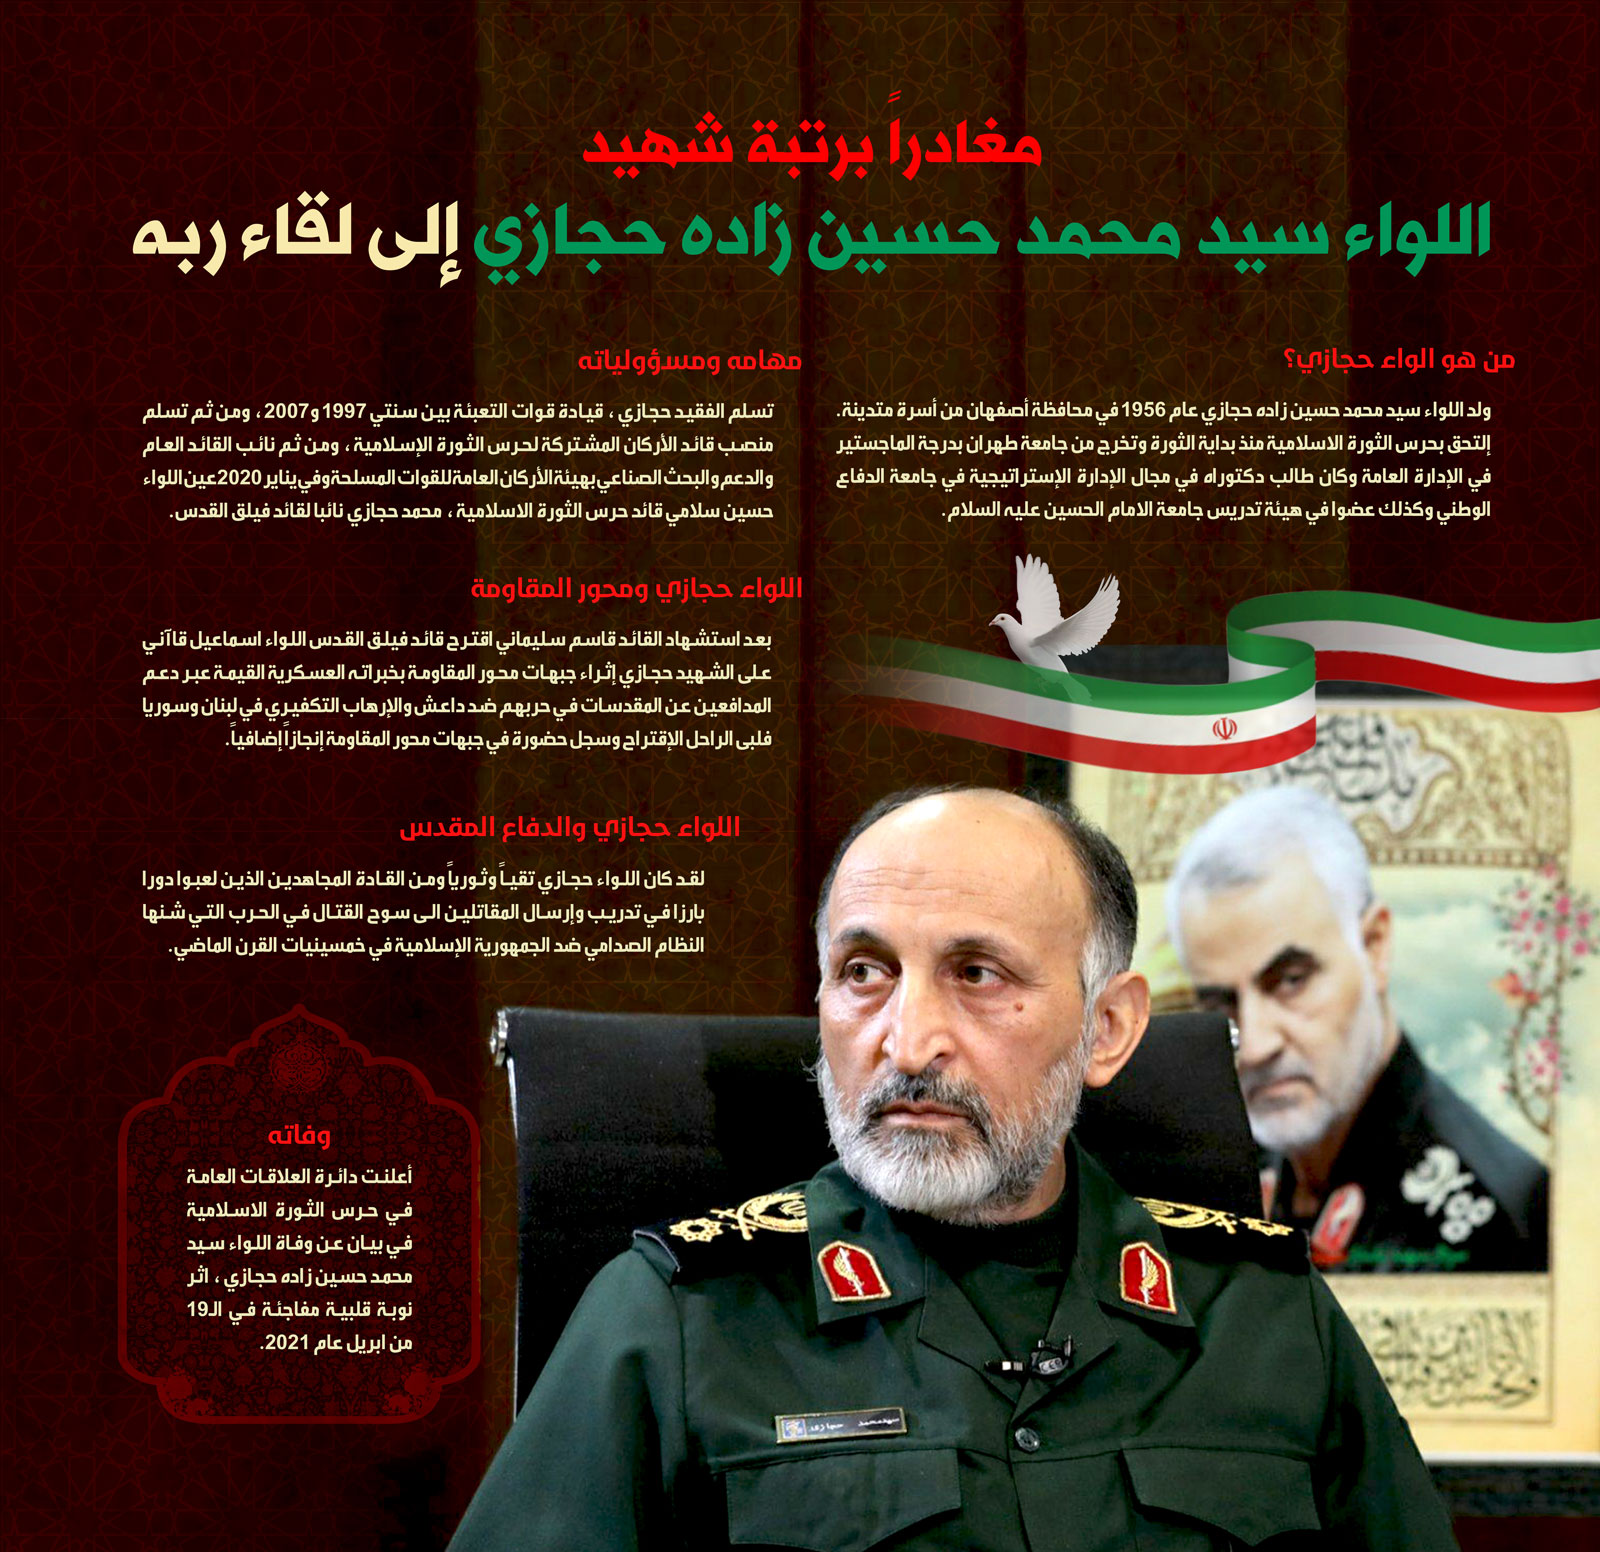 إيران تعلن رحيل اللواء حجازي نائب الفريق سليماني إثر نوبة قلبية مفاجئة